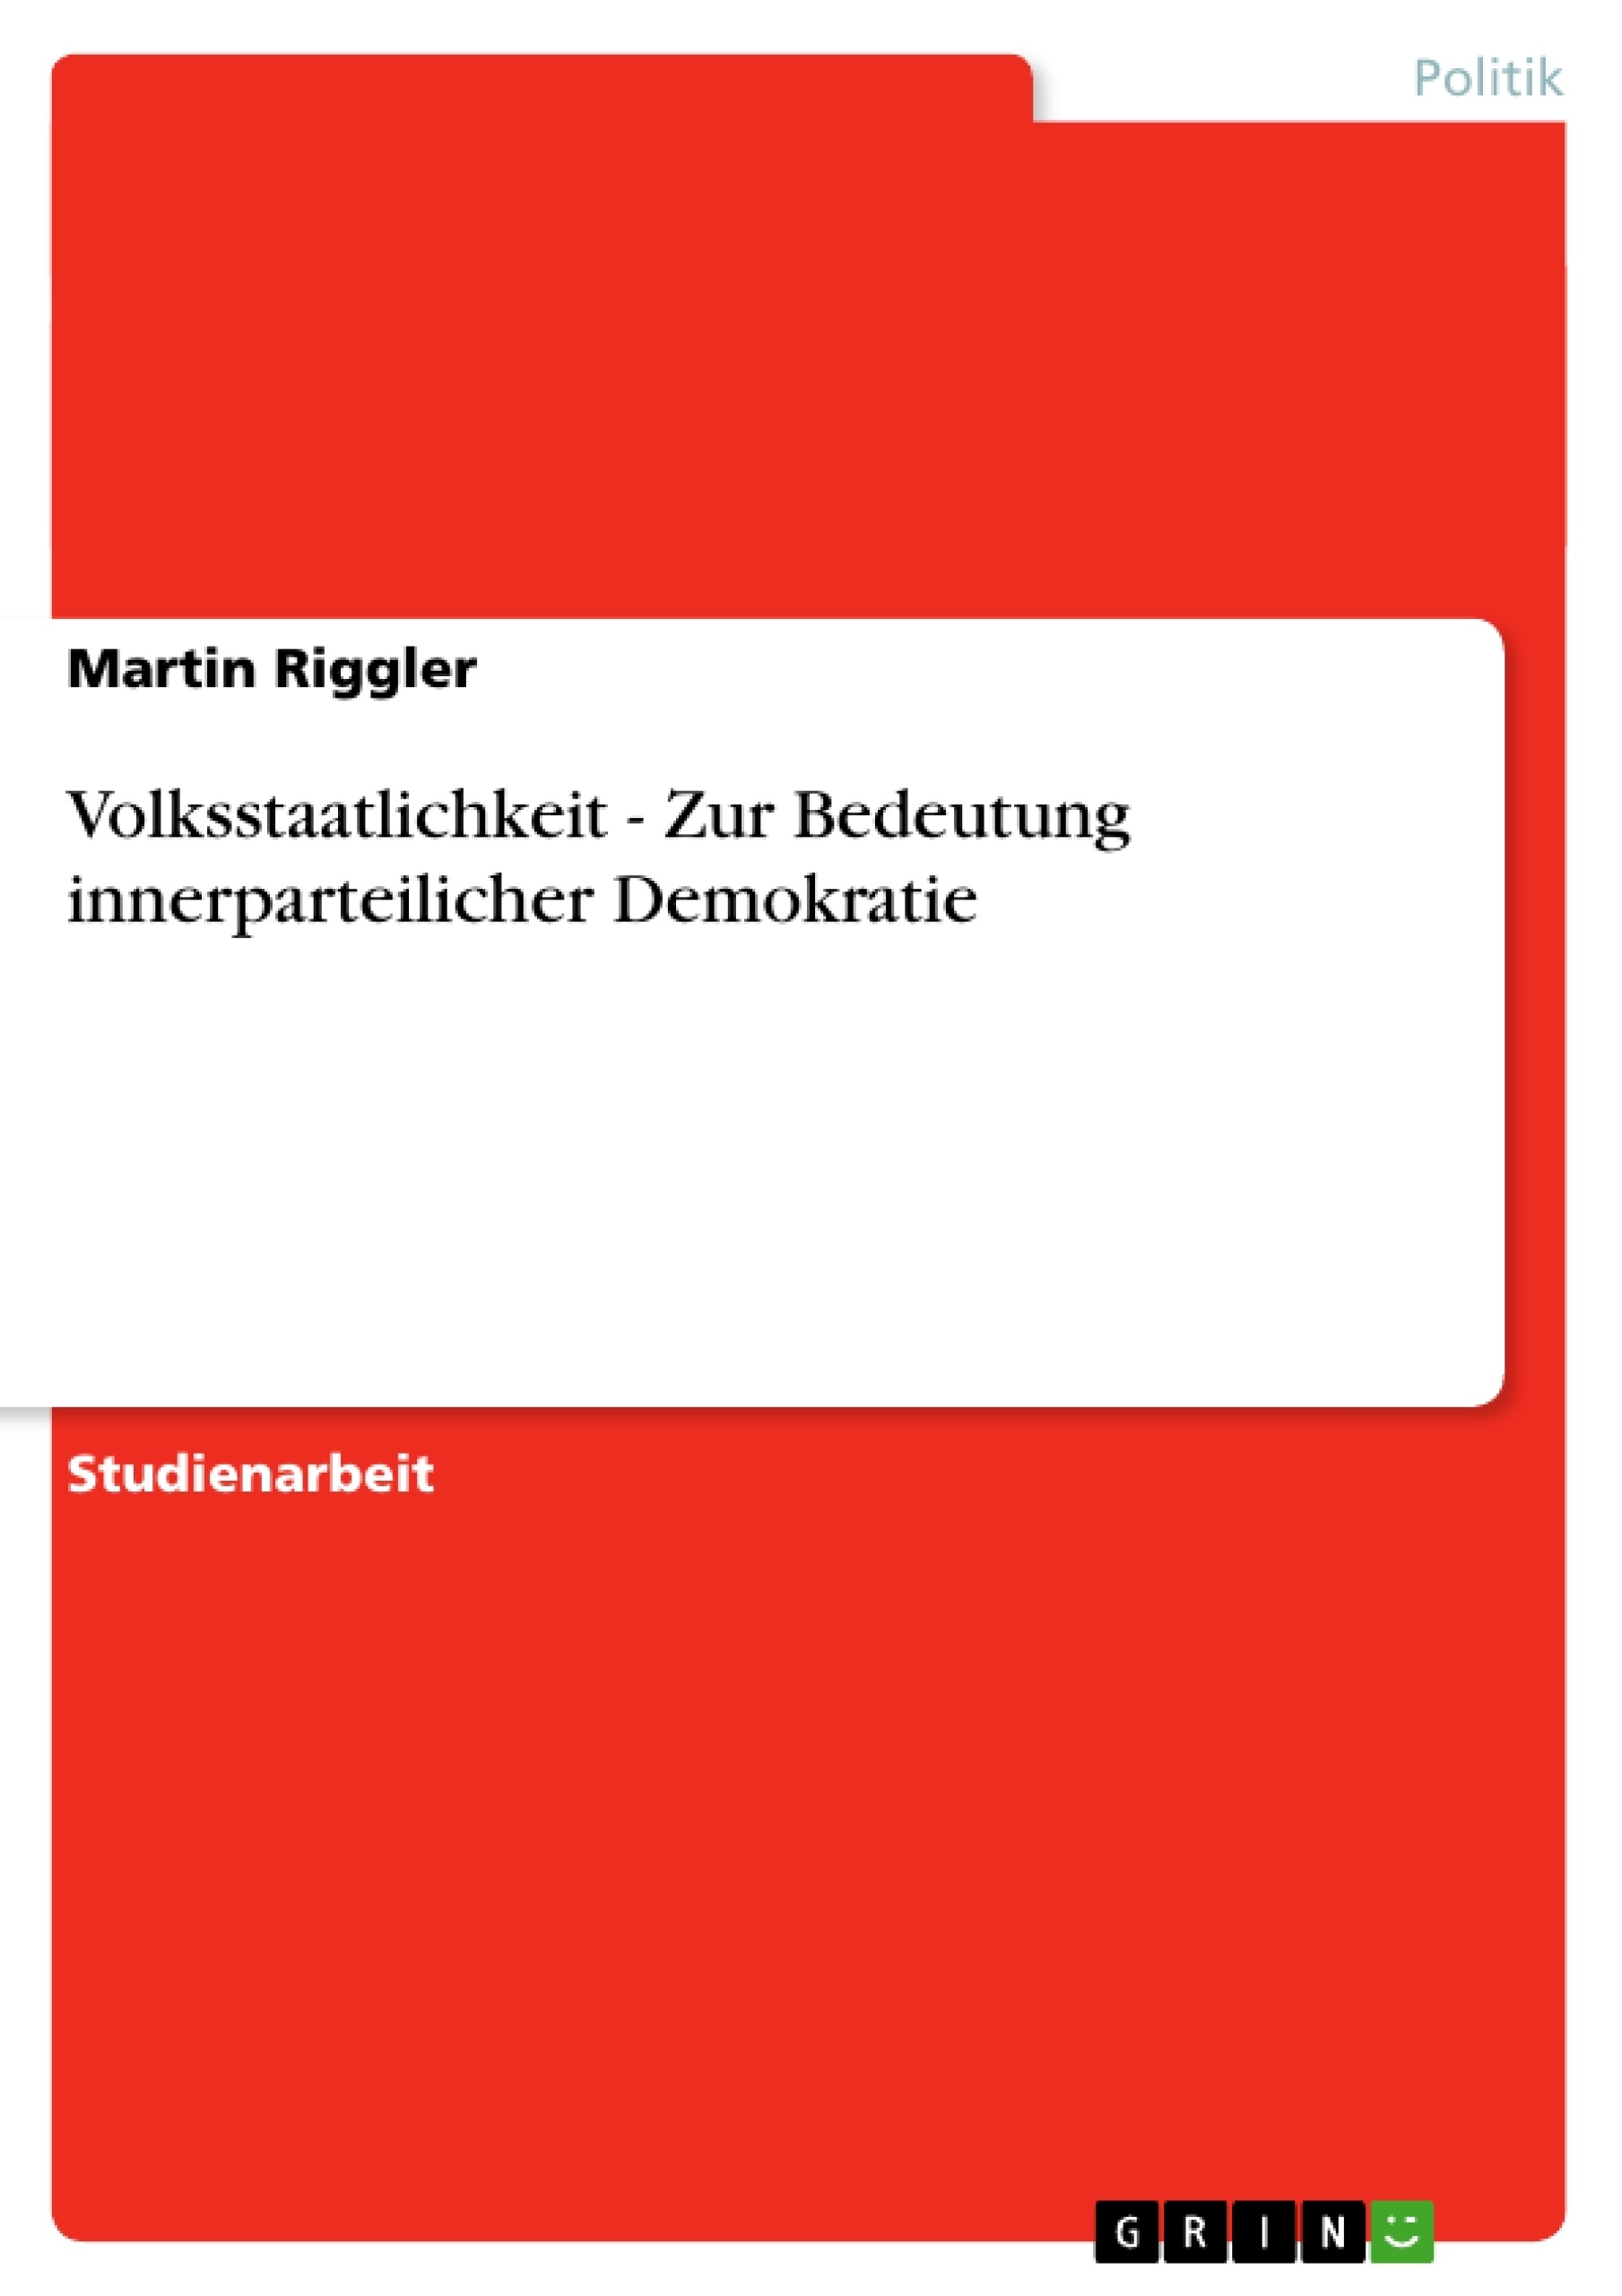 Titre: Volksstaatlichkeit - Zur Bedeutung innerparteilicher Demokratie